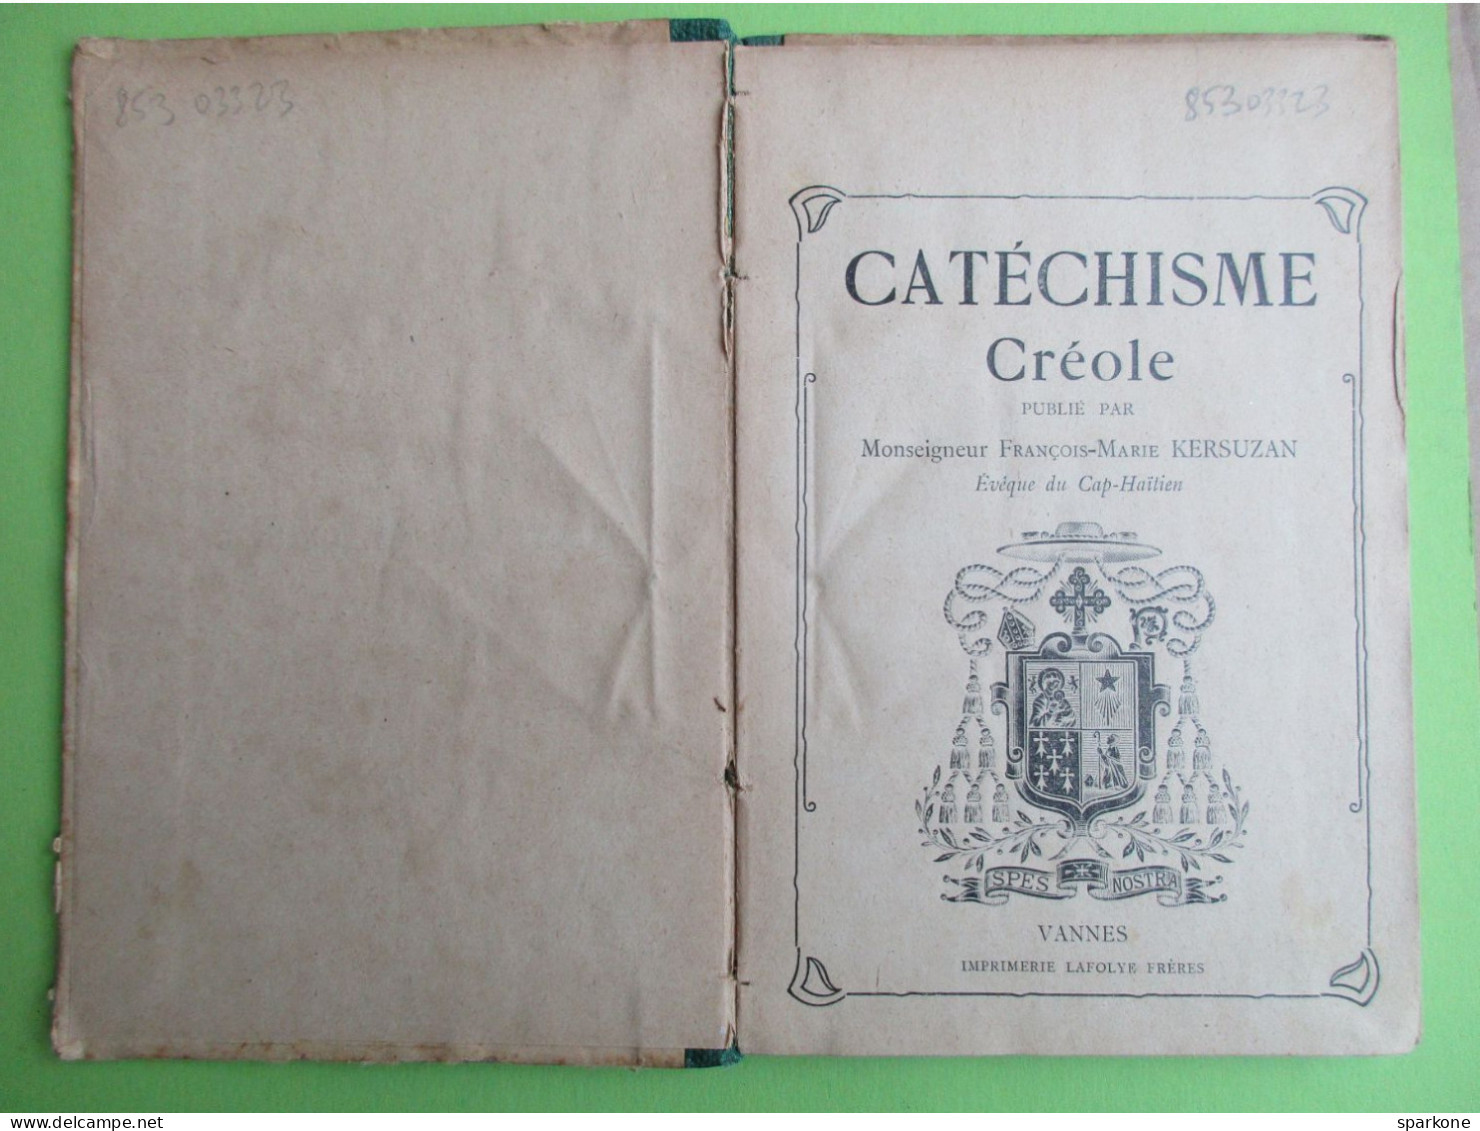 Catéchisme Créole (Monseigneur François-Martin Kersuzan) éditions Lafolye - Kultur